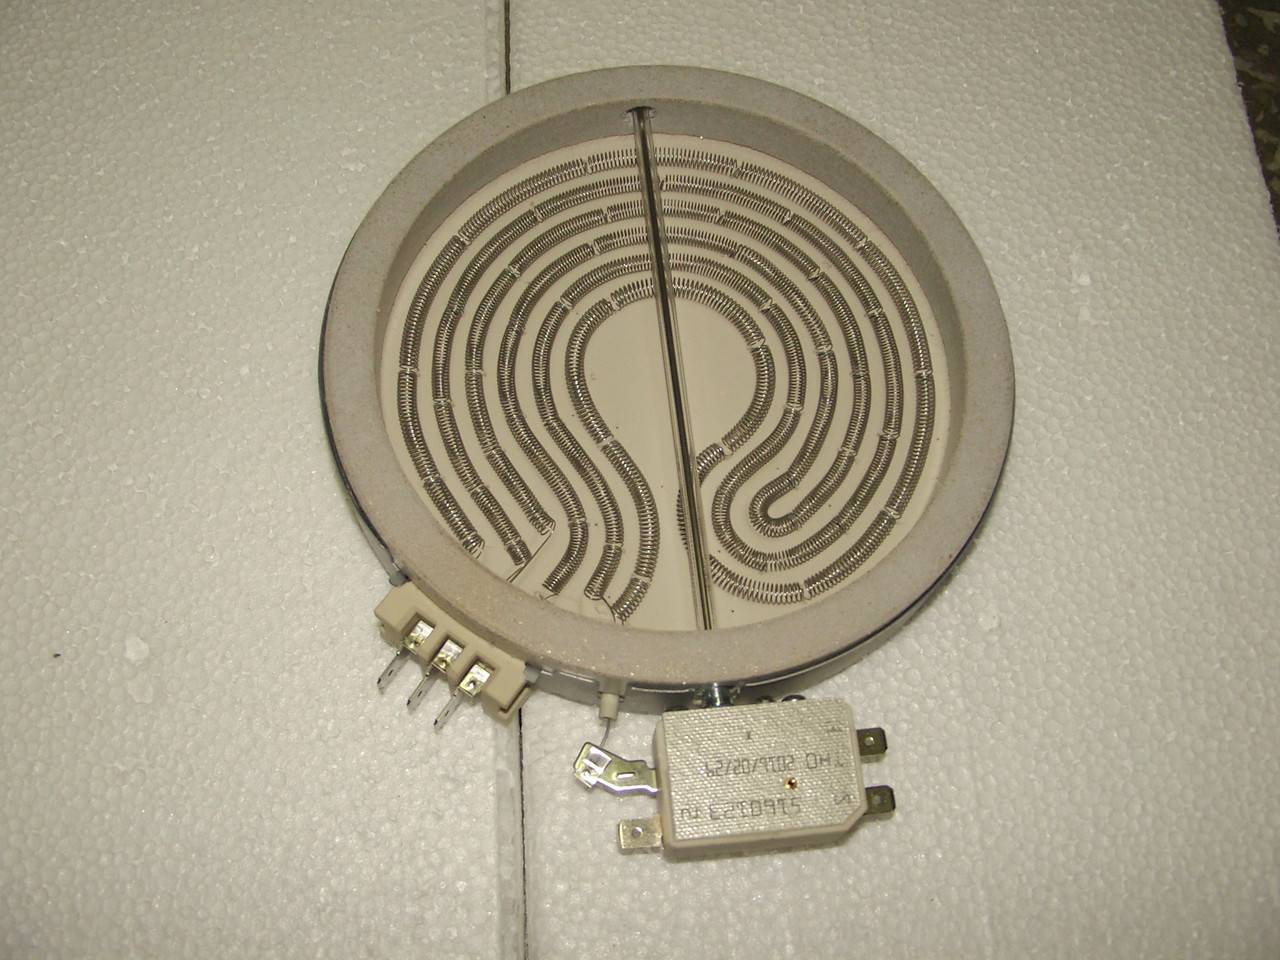 Подключение электроплиты своими руками: схемы подсоединения в квартире